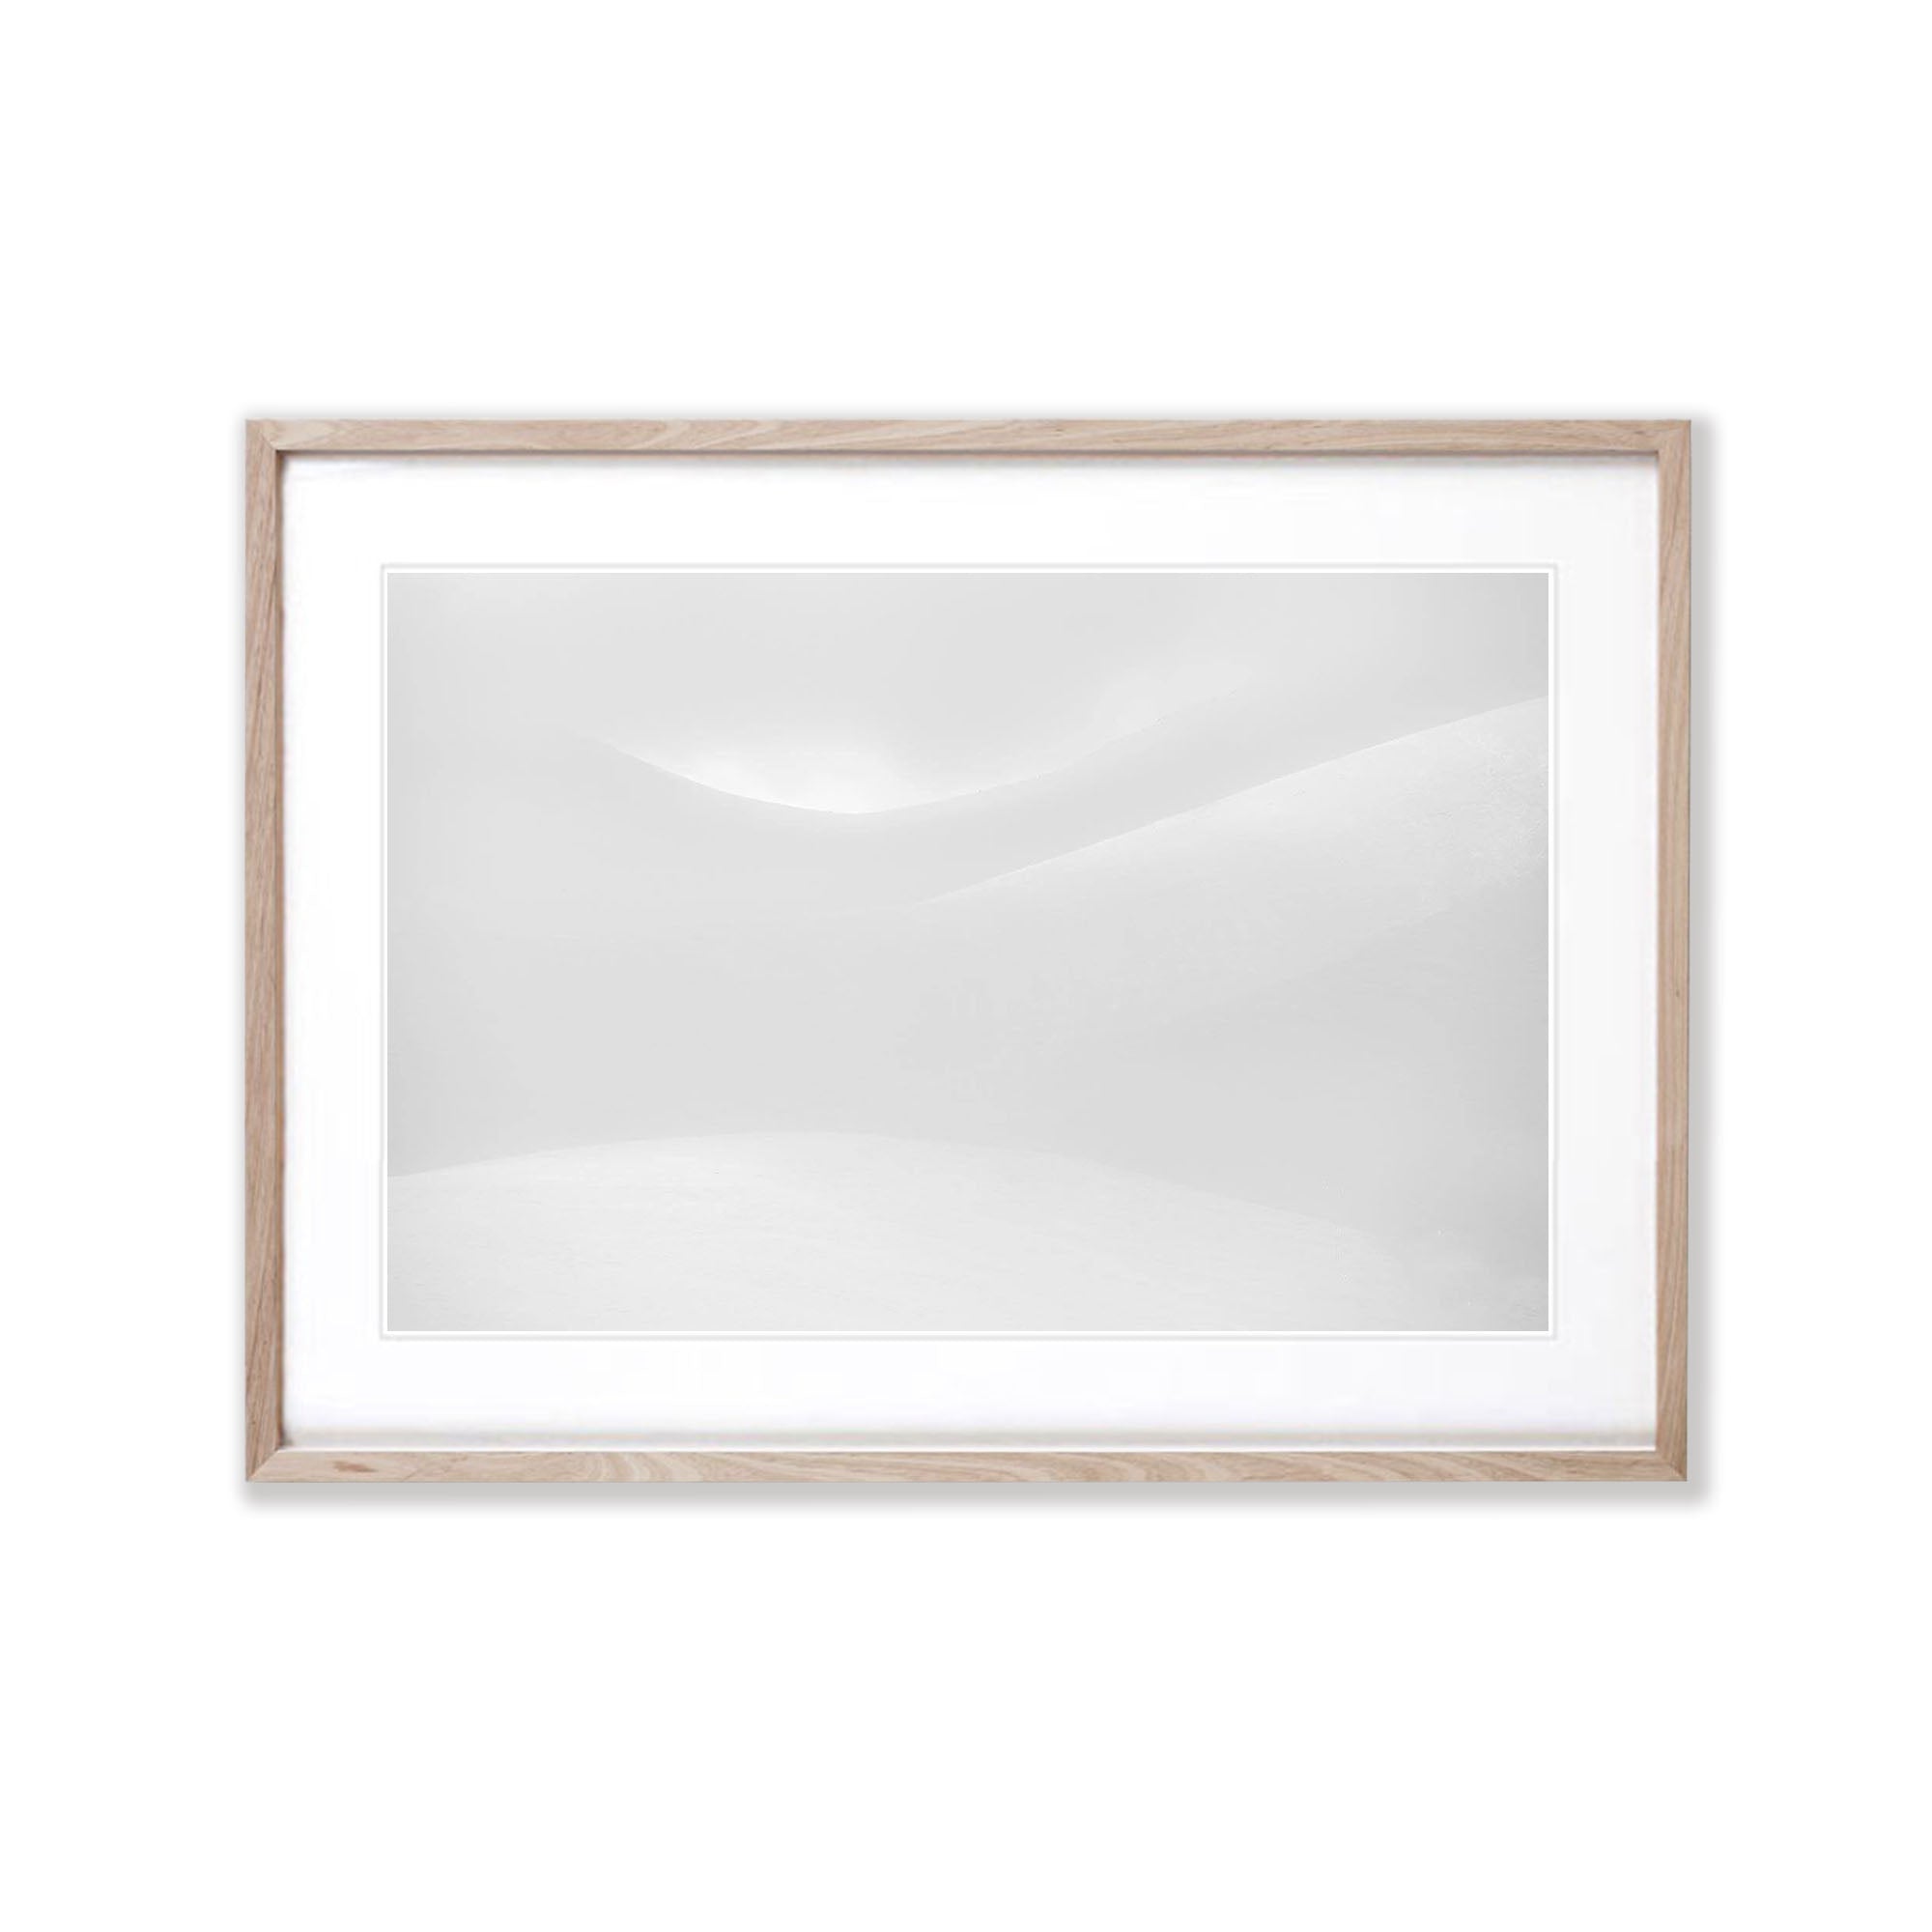 ARTWORK INSTOCK - Curves - 100 x 66cms Canvas White Framed Print